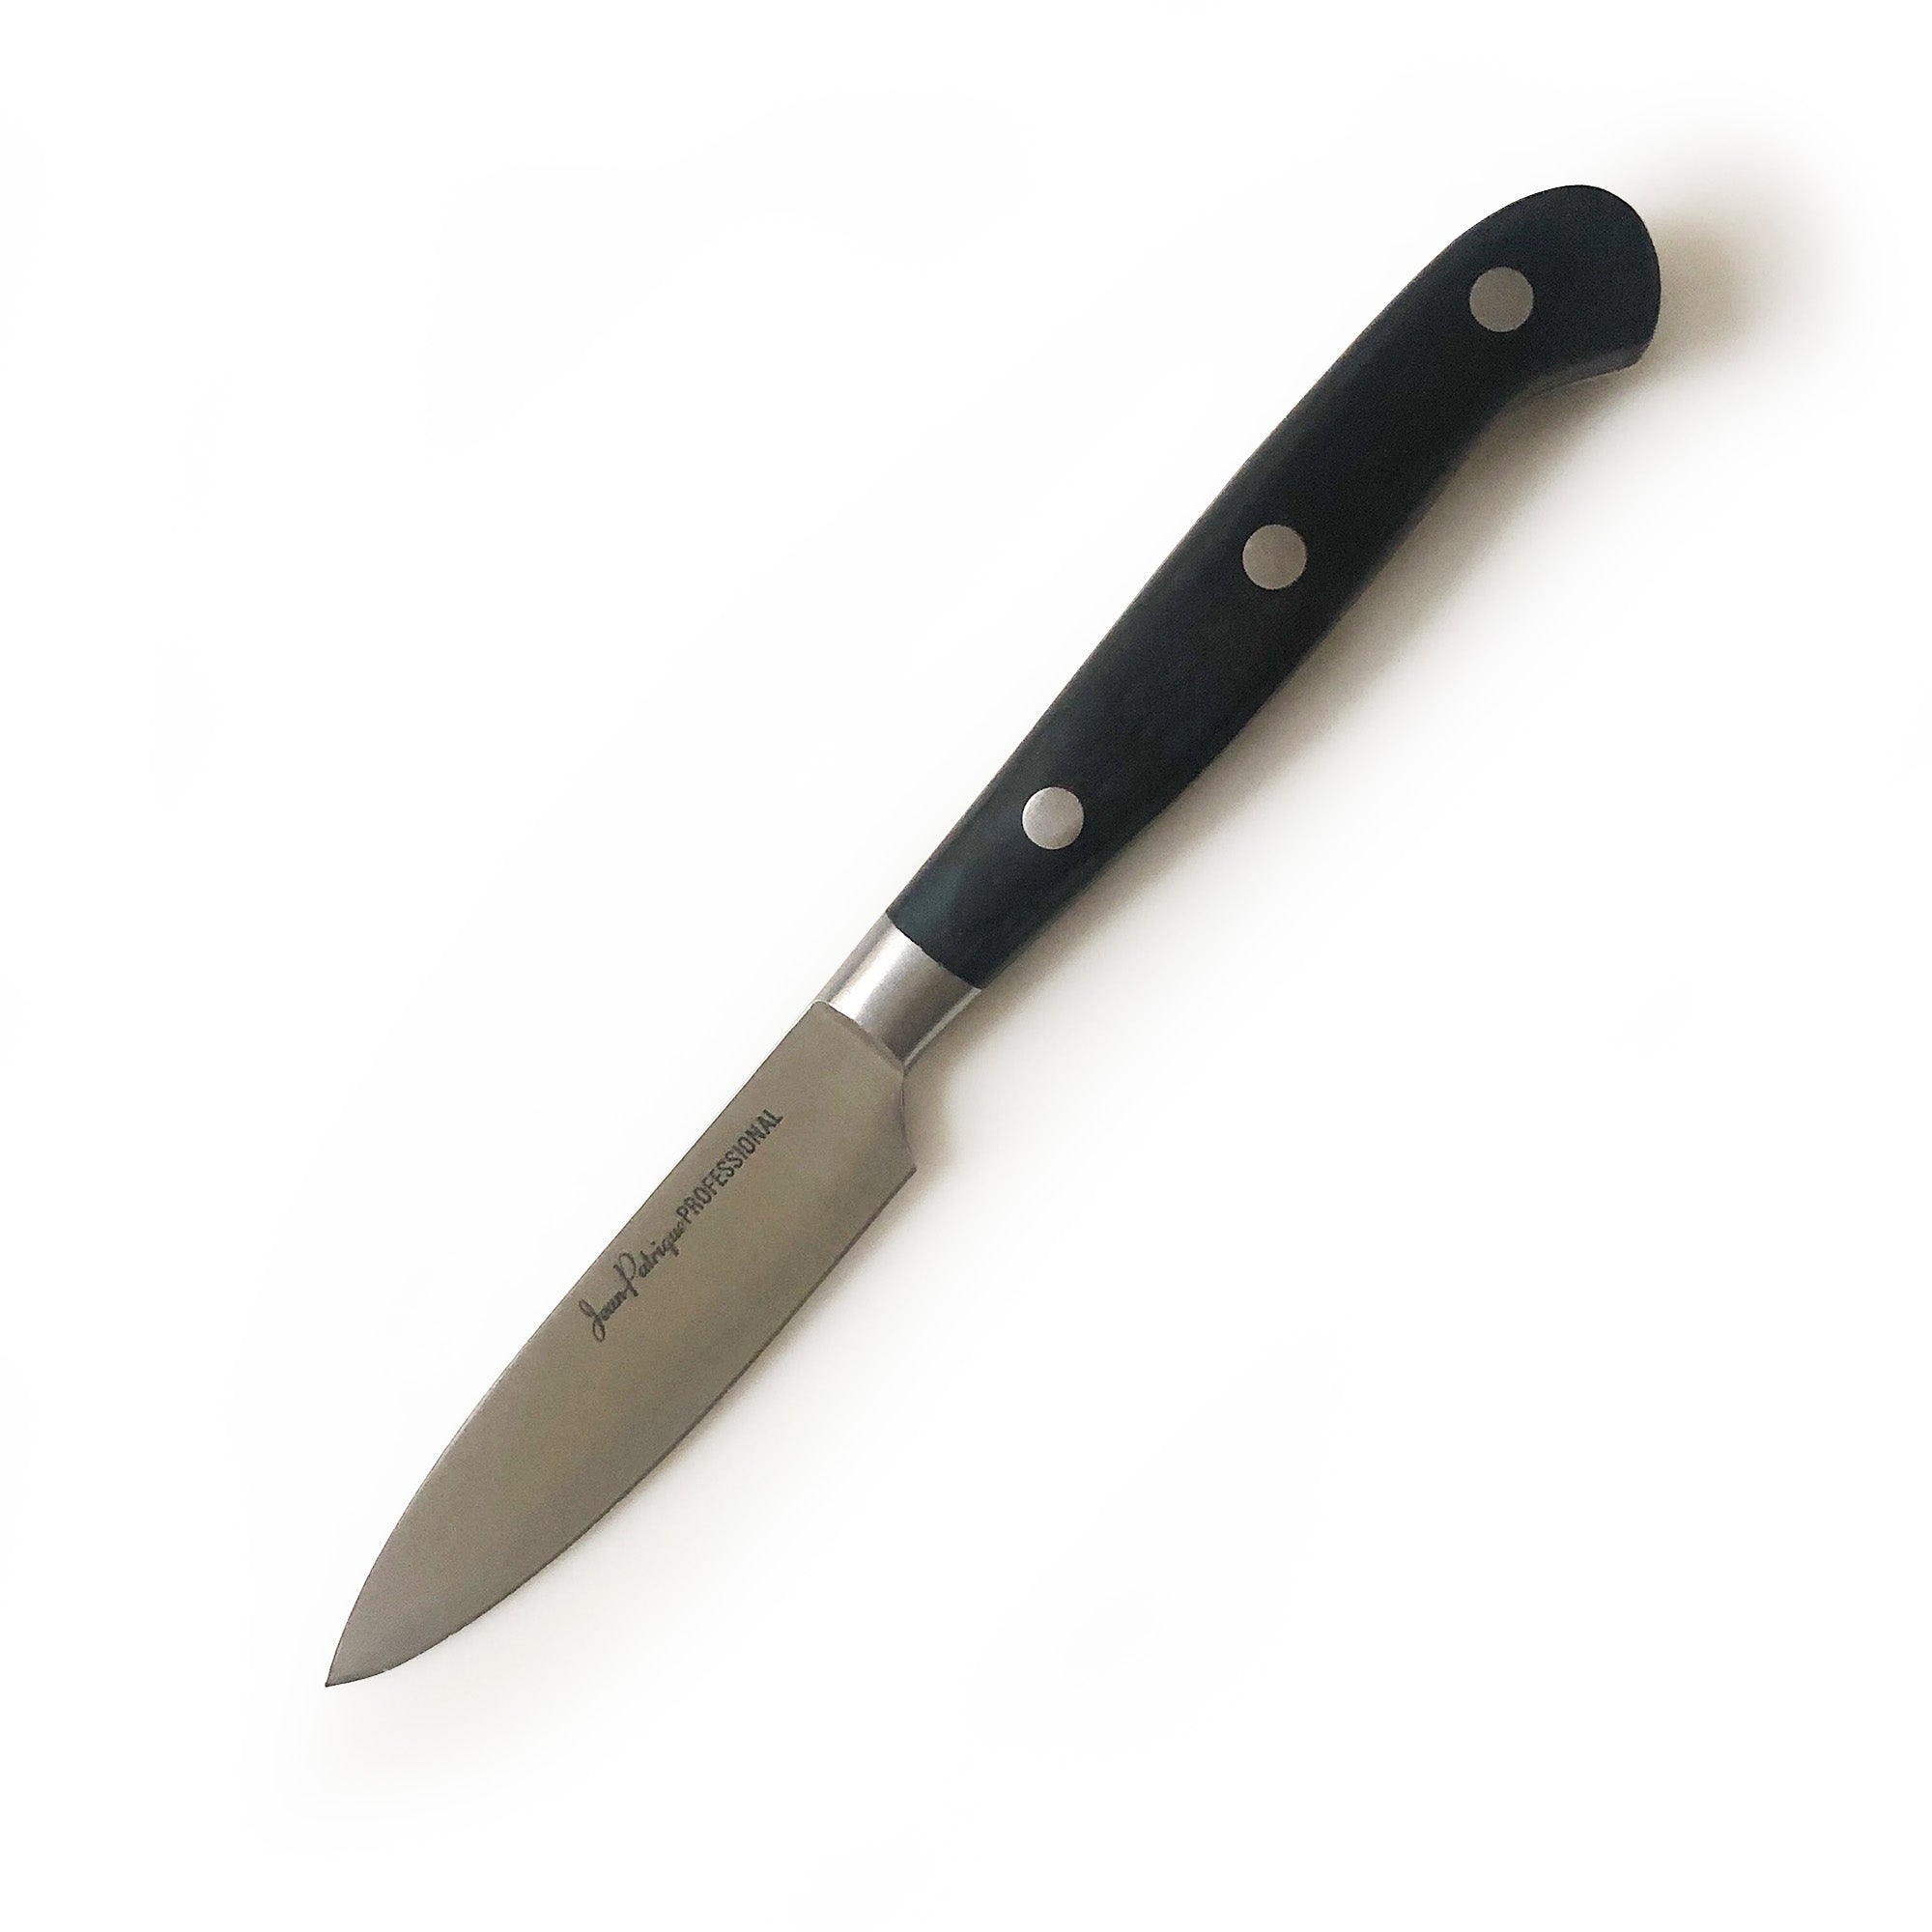 5-Piece Black Handled Knife Set